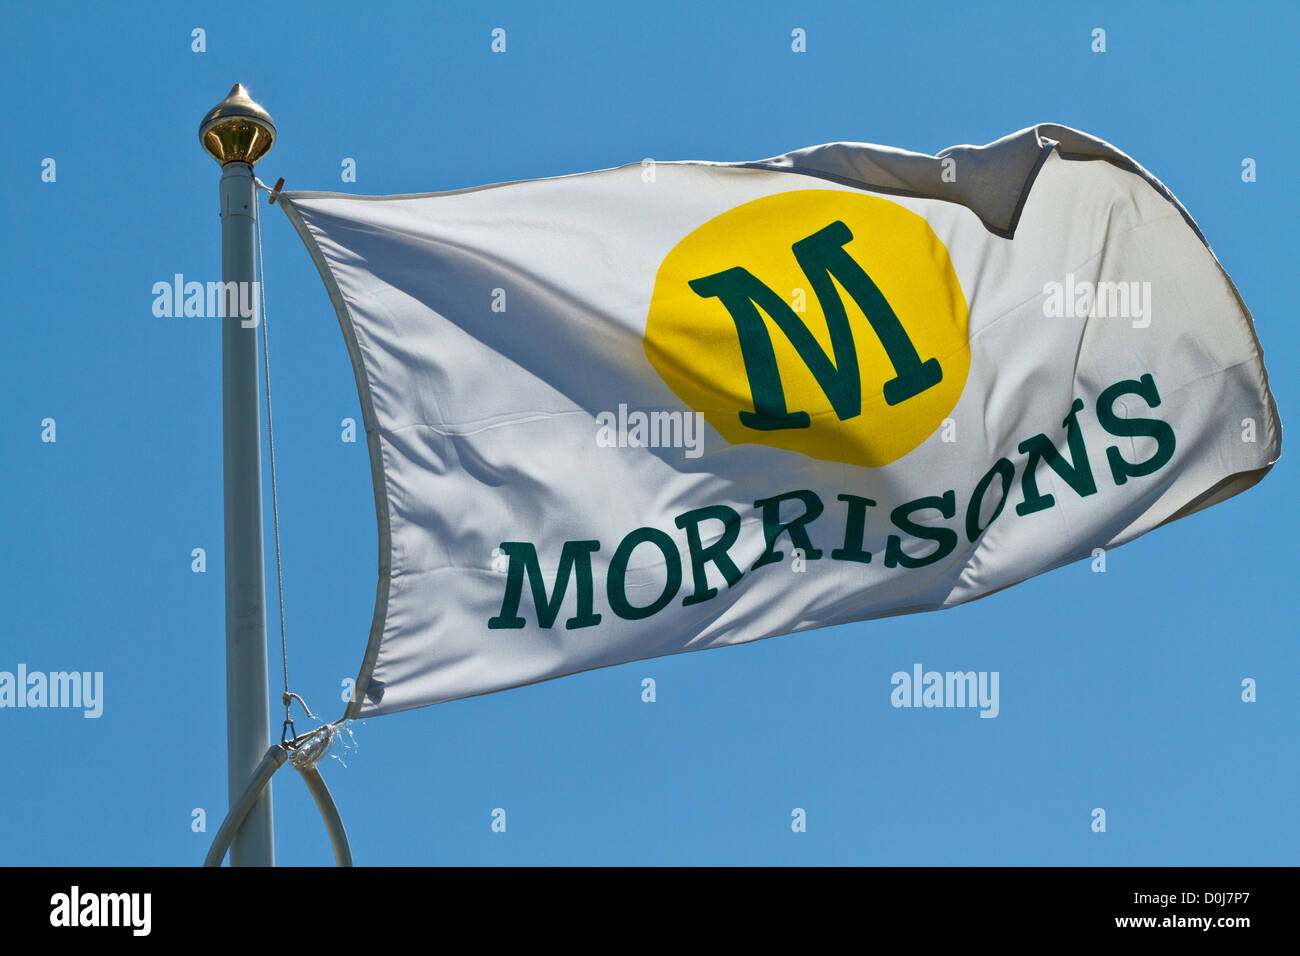 Un minorista Morrison bandera ondeando fuera de una tienda en Hertfordshire. Foto de stock